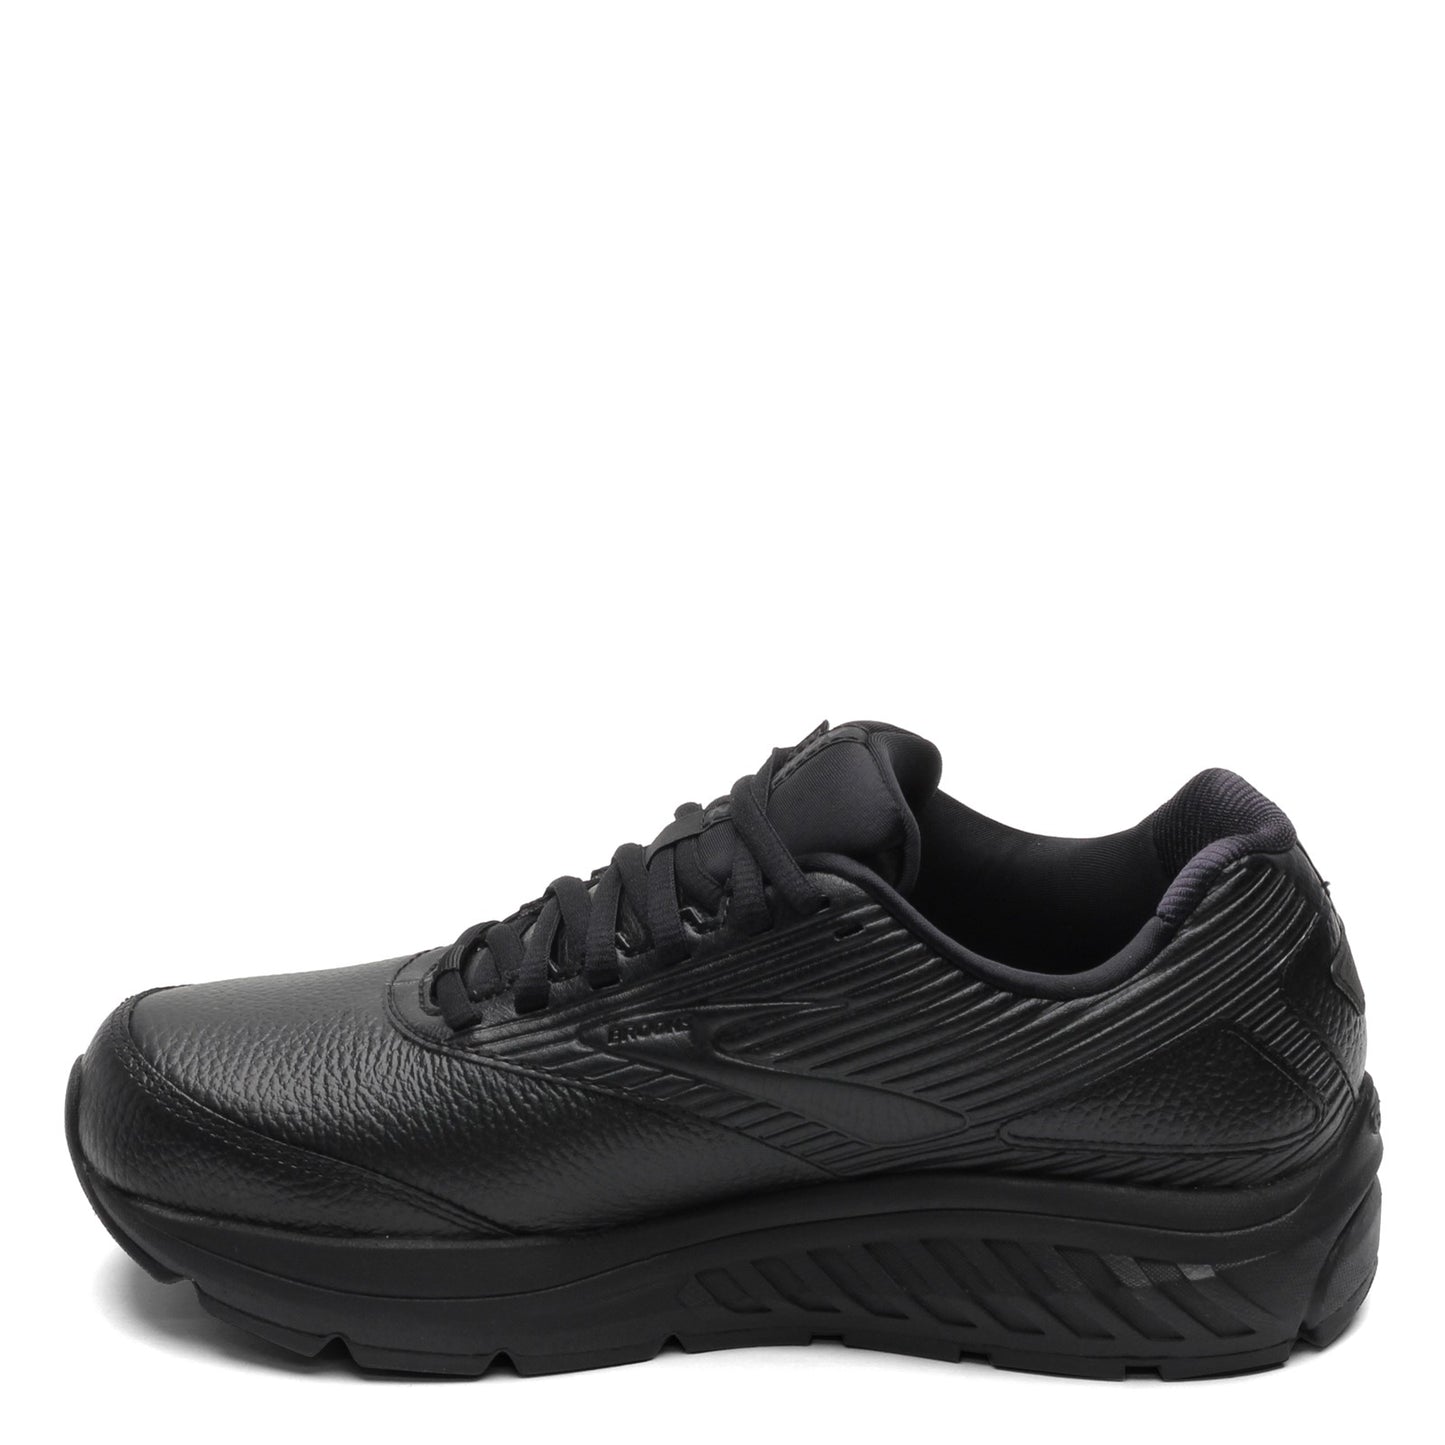 Peltz Shoes  Women's Brooks Addiction Walker 2 Walking Shoe - Wide Width Black/Black 120307 1D 072